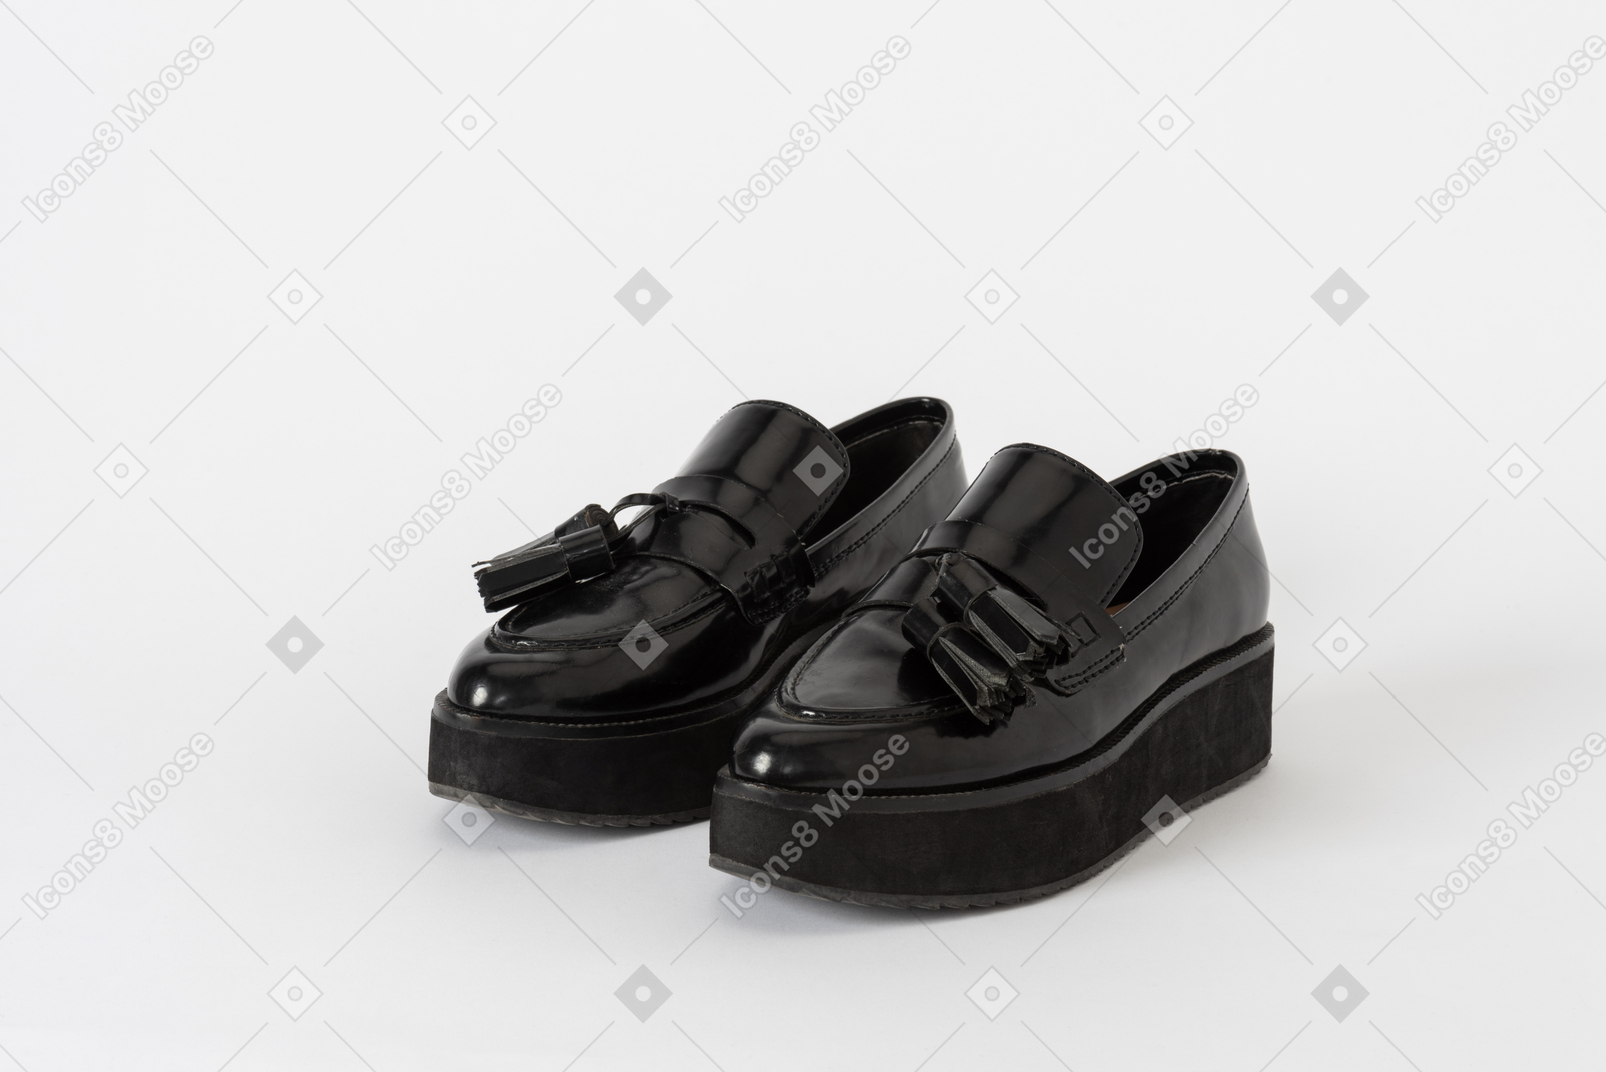 Un tiro frontal de tres cuartos de un par de zapatos mocasines con plataforma de laca negra